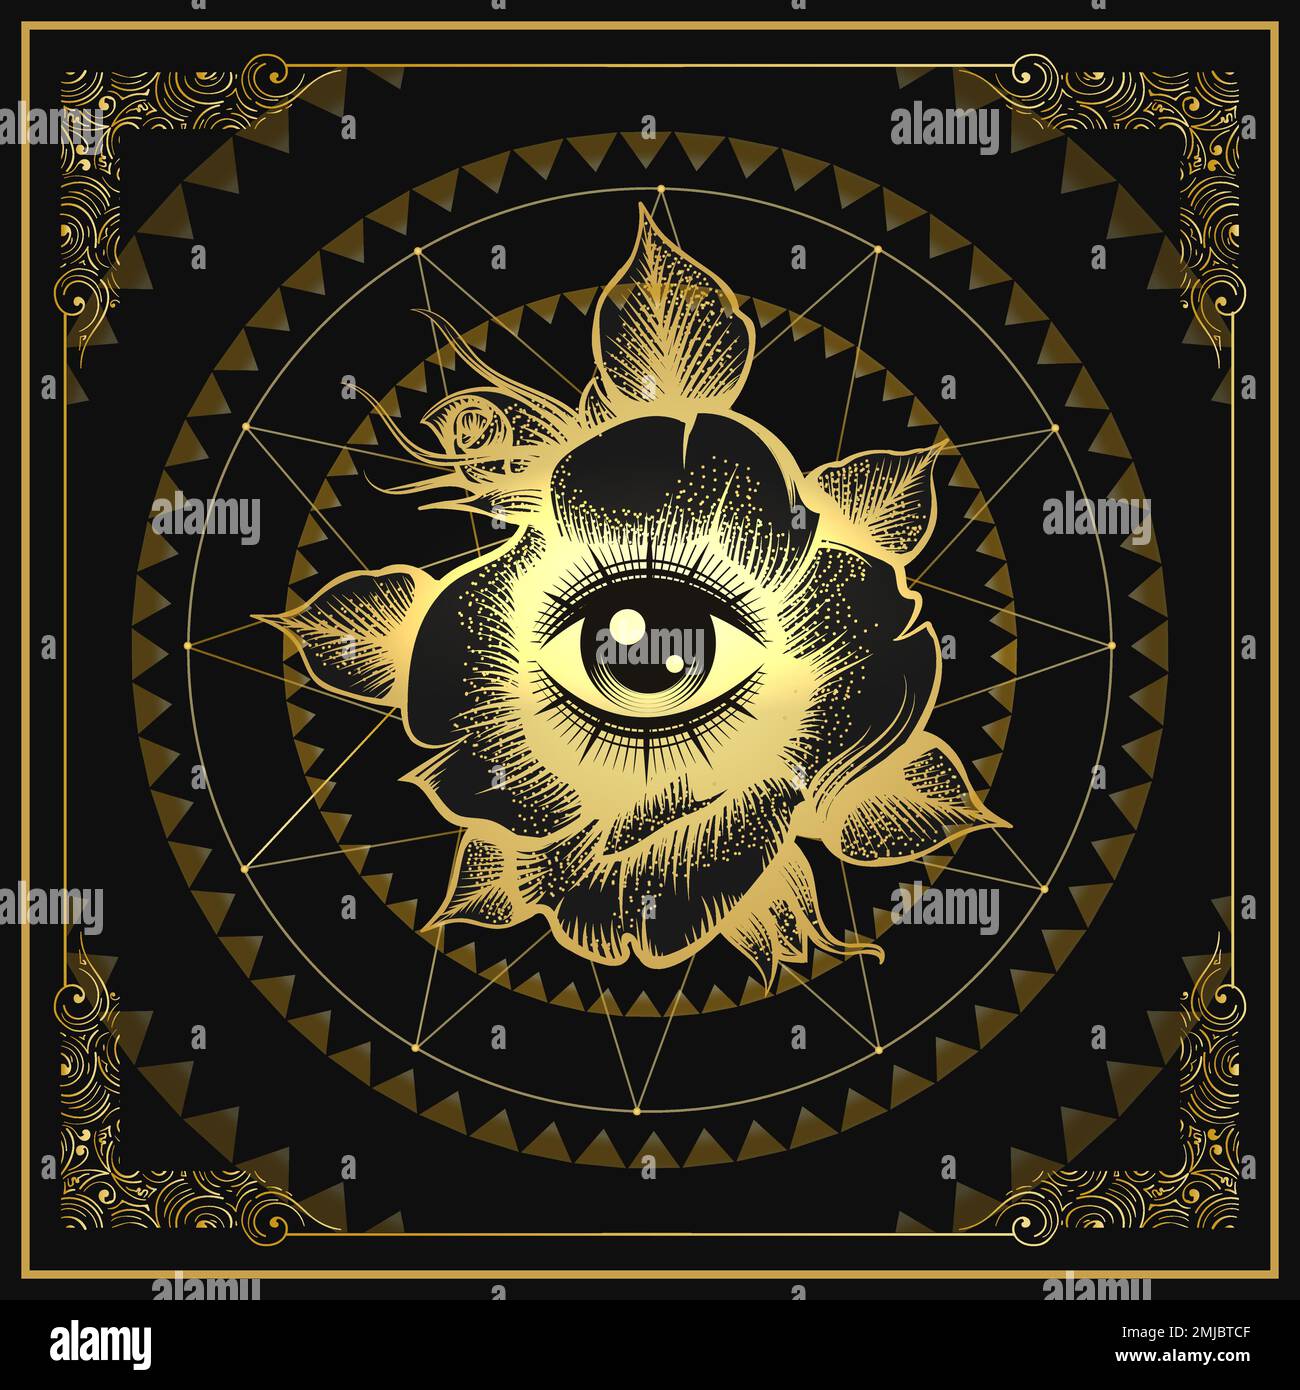 Emblem ésotérique de tous les yeux voyant dans un Emblem de fleur de rose sur fond noir. Illustration vectorielle Illustration de Vecteur